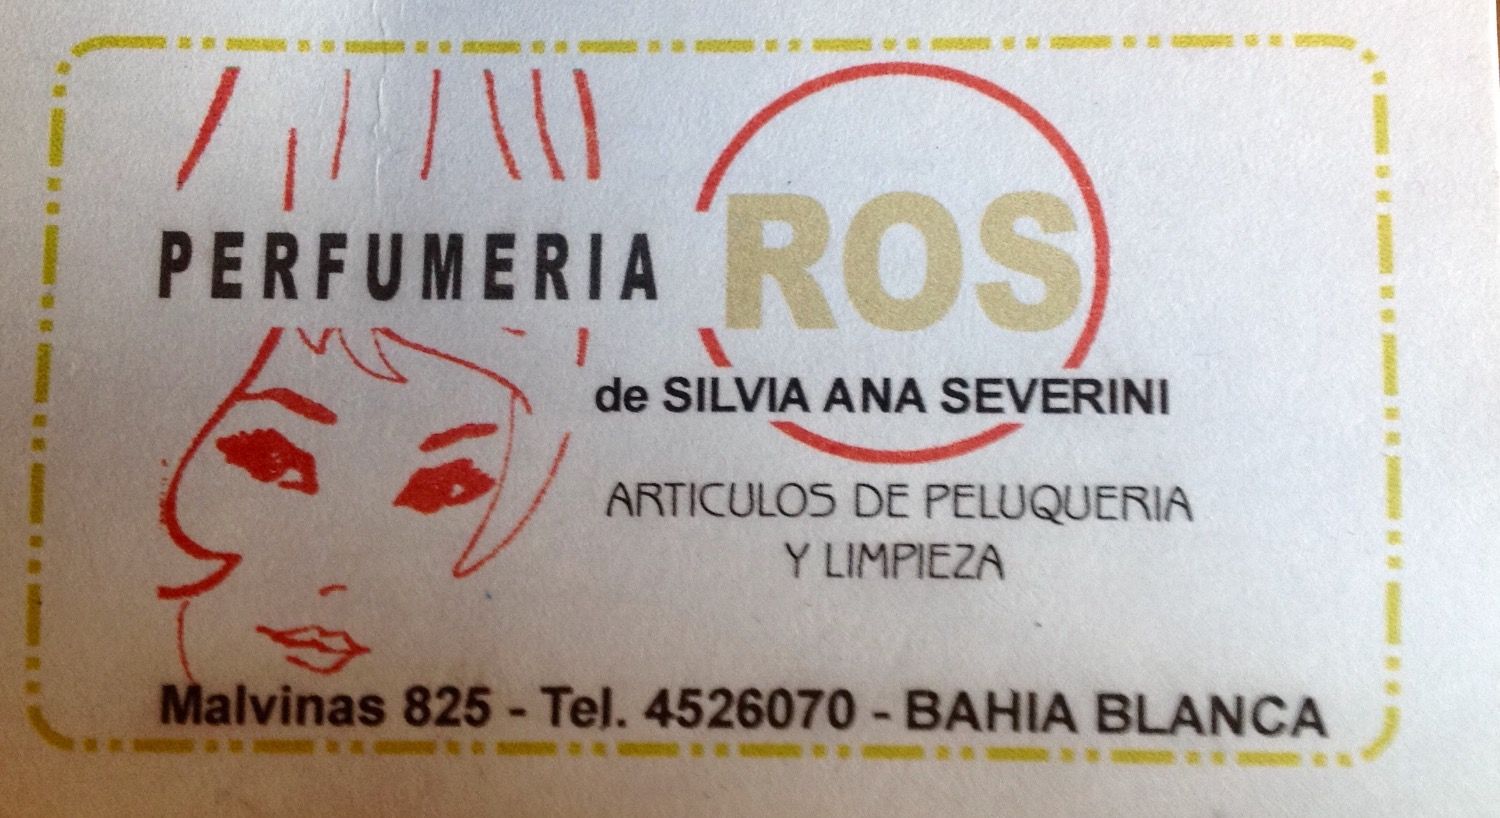 Logotipo Perfumeria Ros